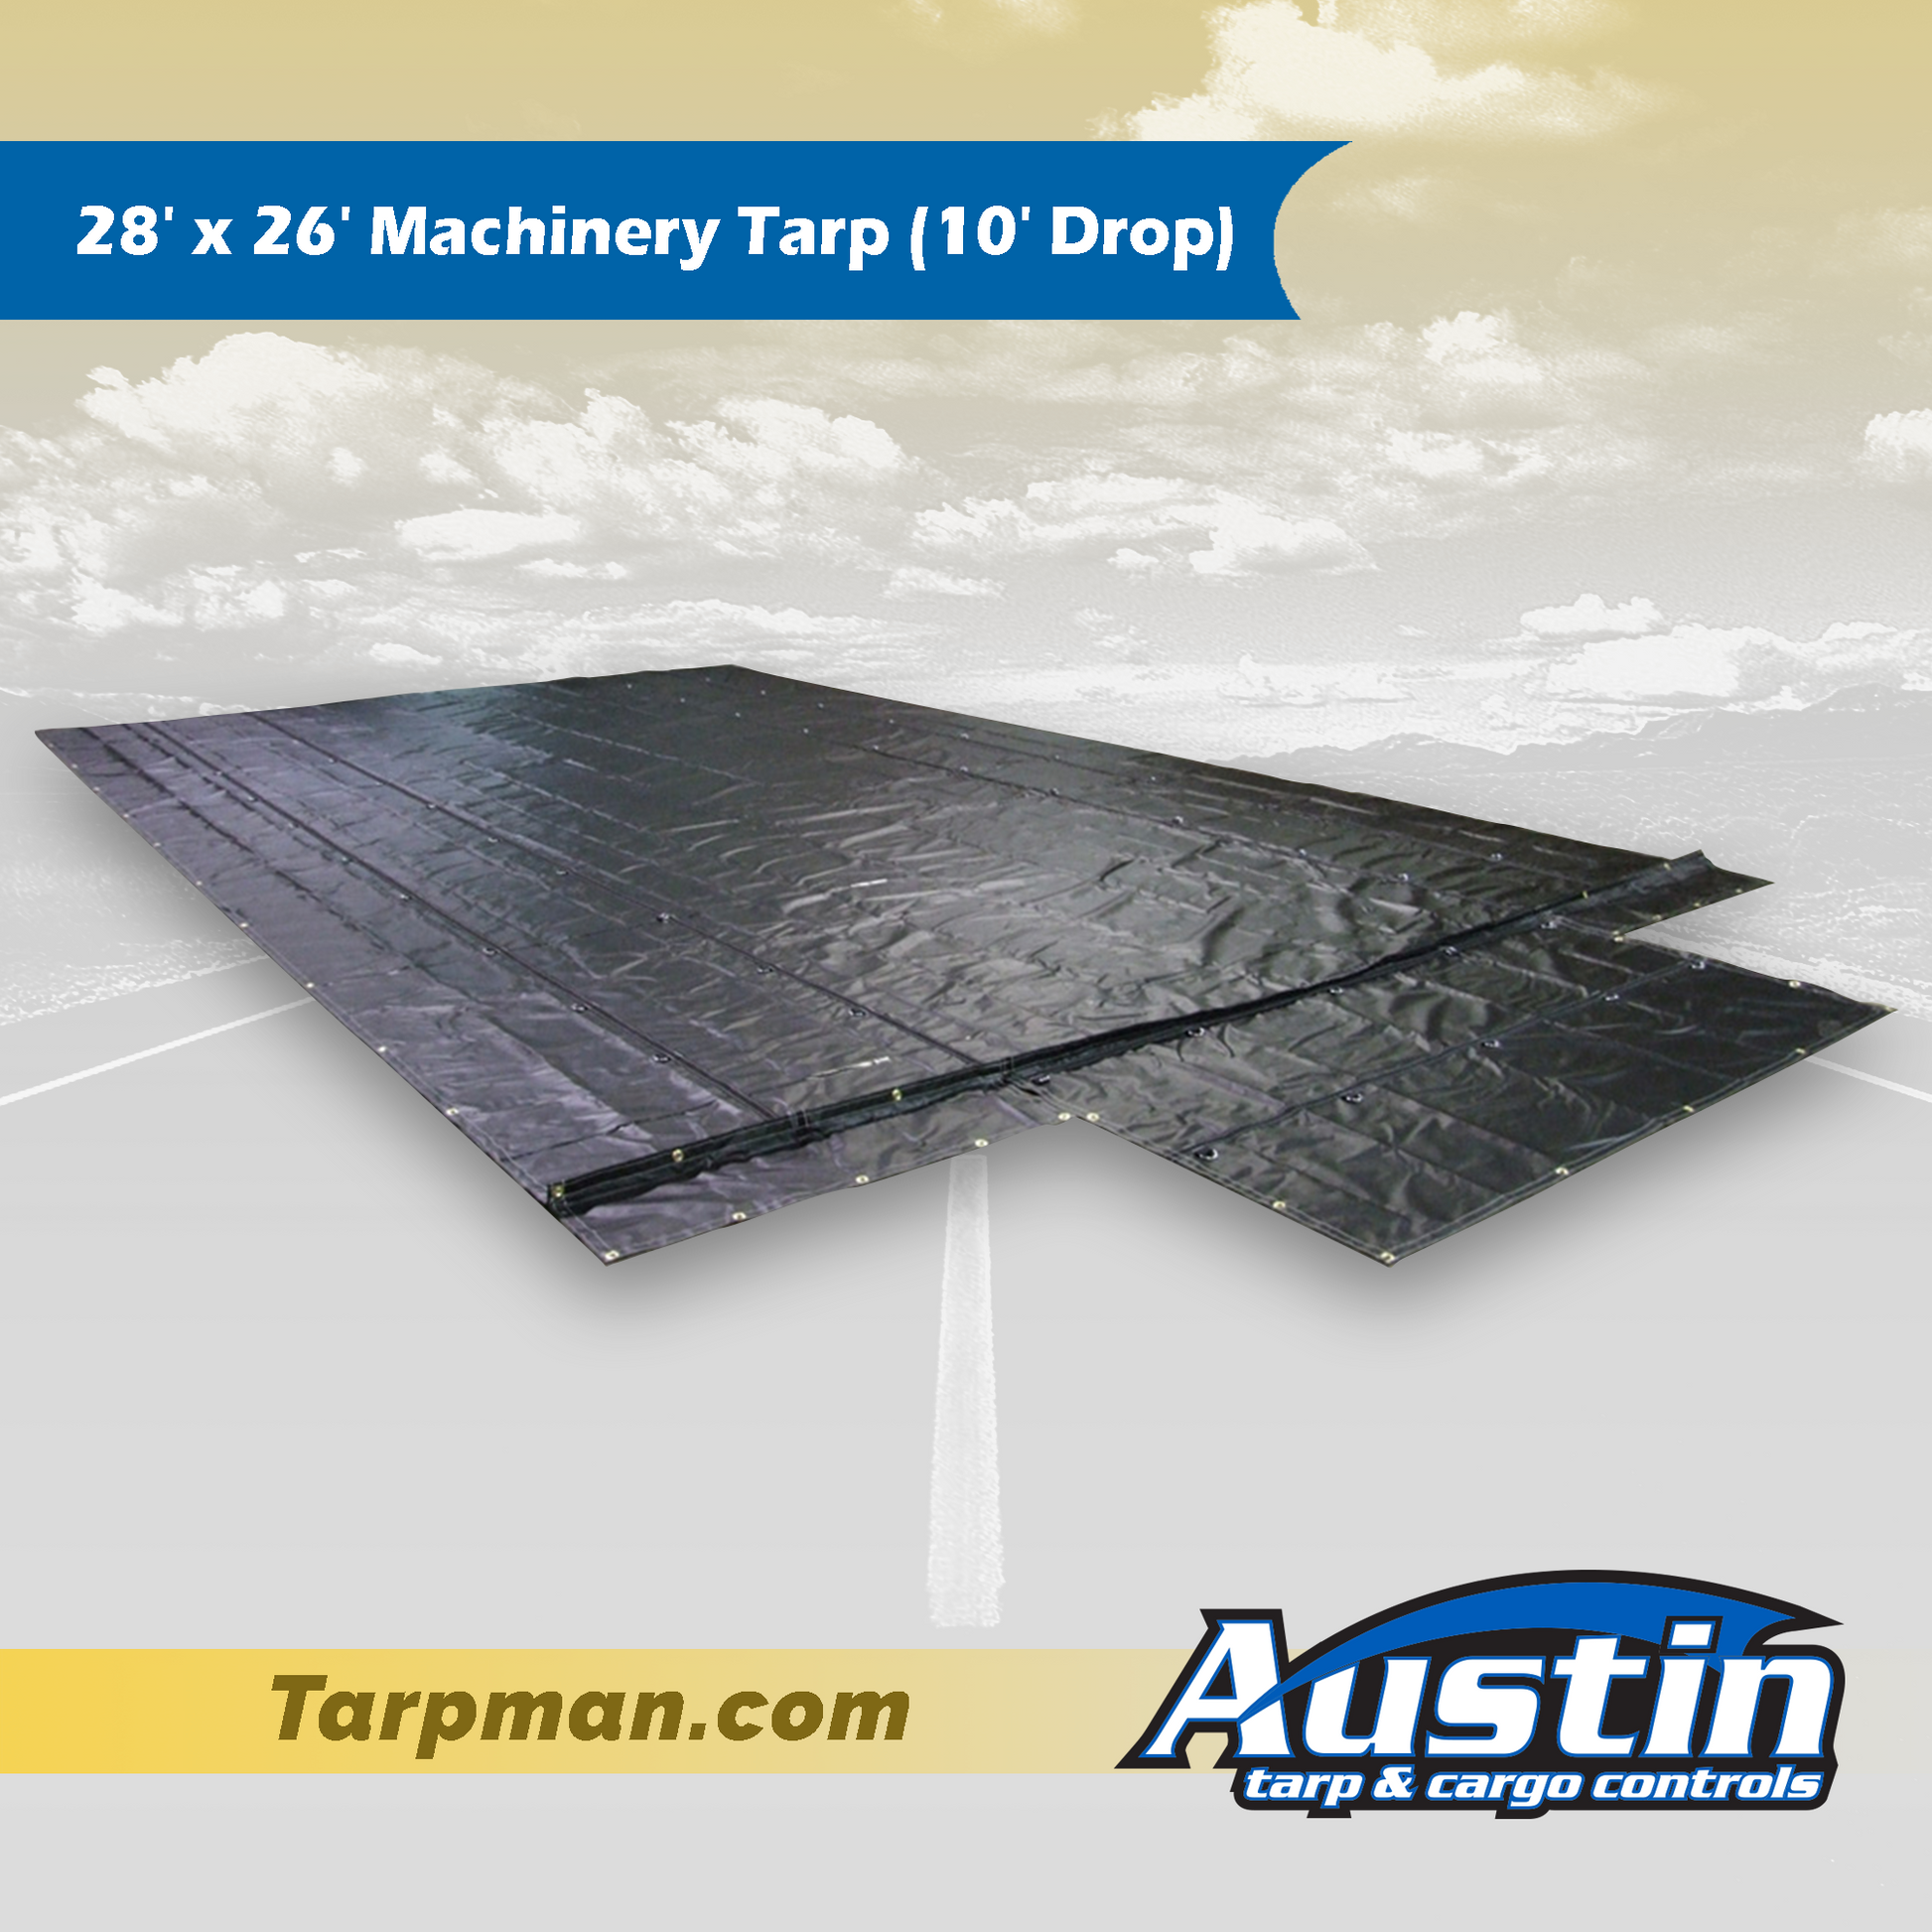 28' x 26' Machinery Tarp (10' Drop) Tarpman.com | Austin Tarp & Cargo Controls